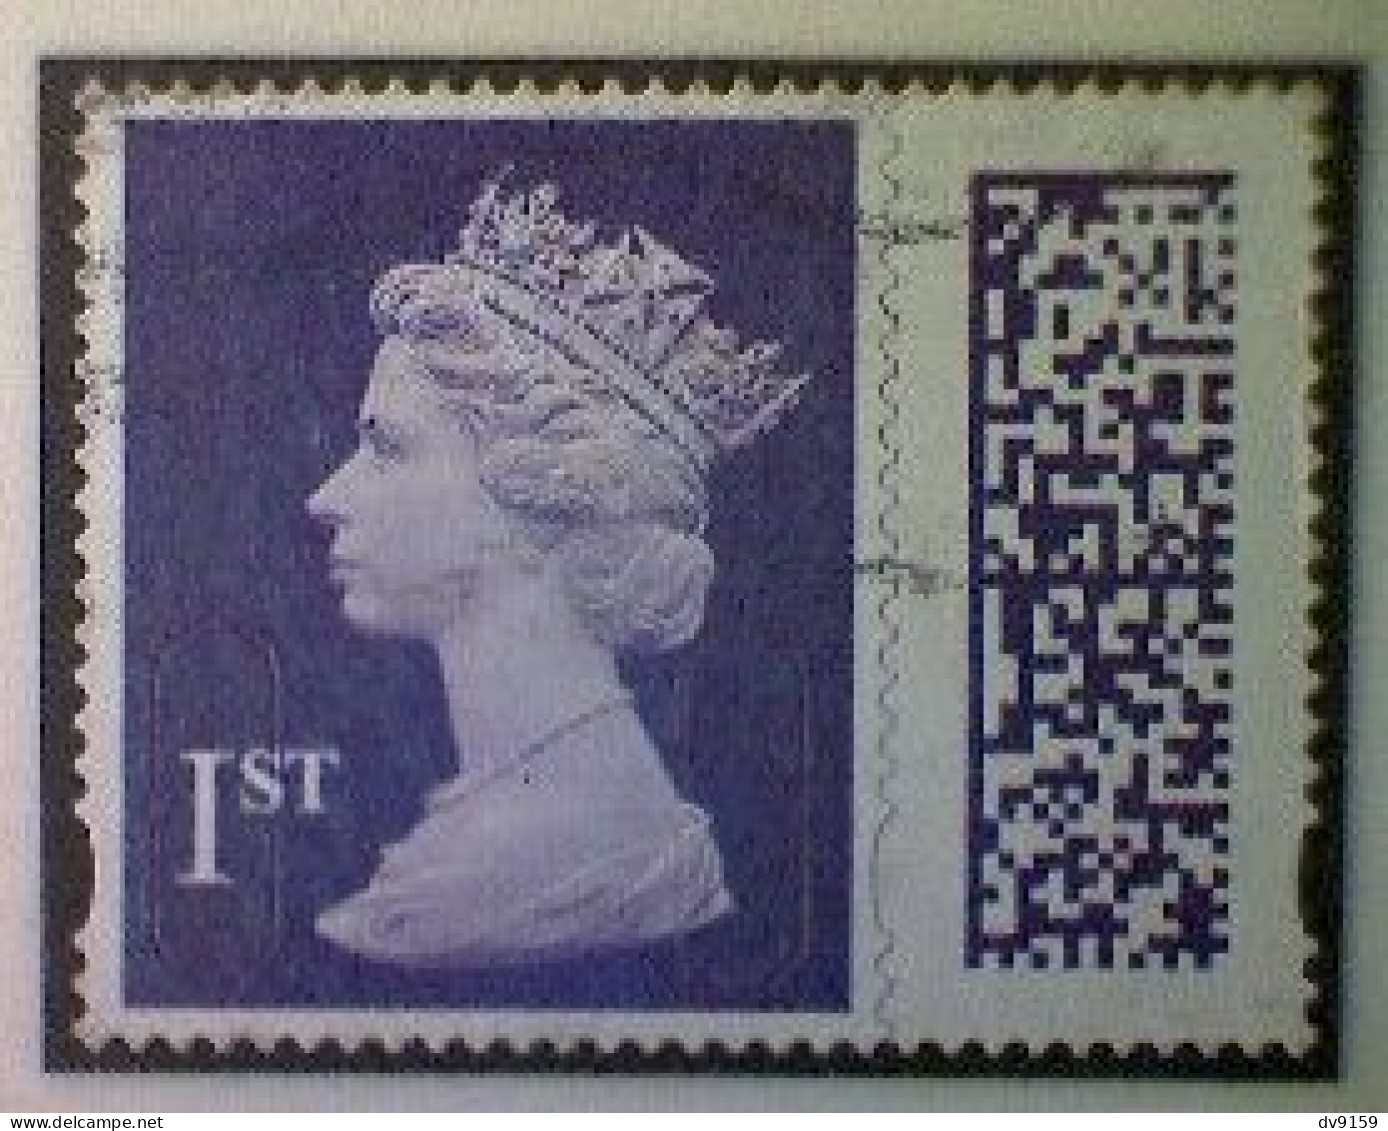 Great Britain, Scott MH501, Used (o), 2022 Machin (MEIL/M22L) Queen Elizabeth II, 1st, Violet - Série 'Machin'